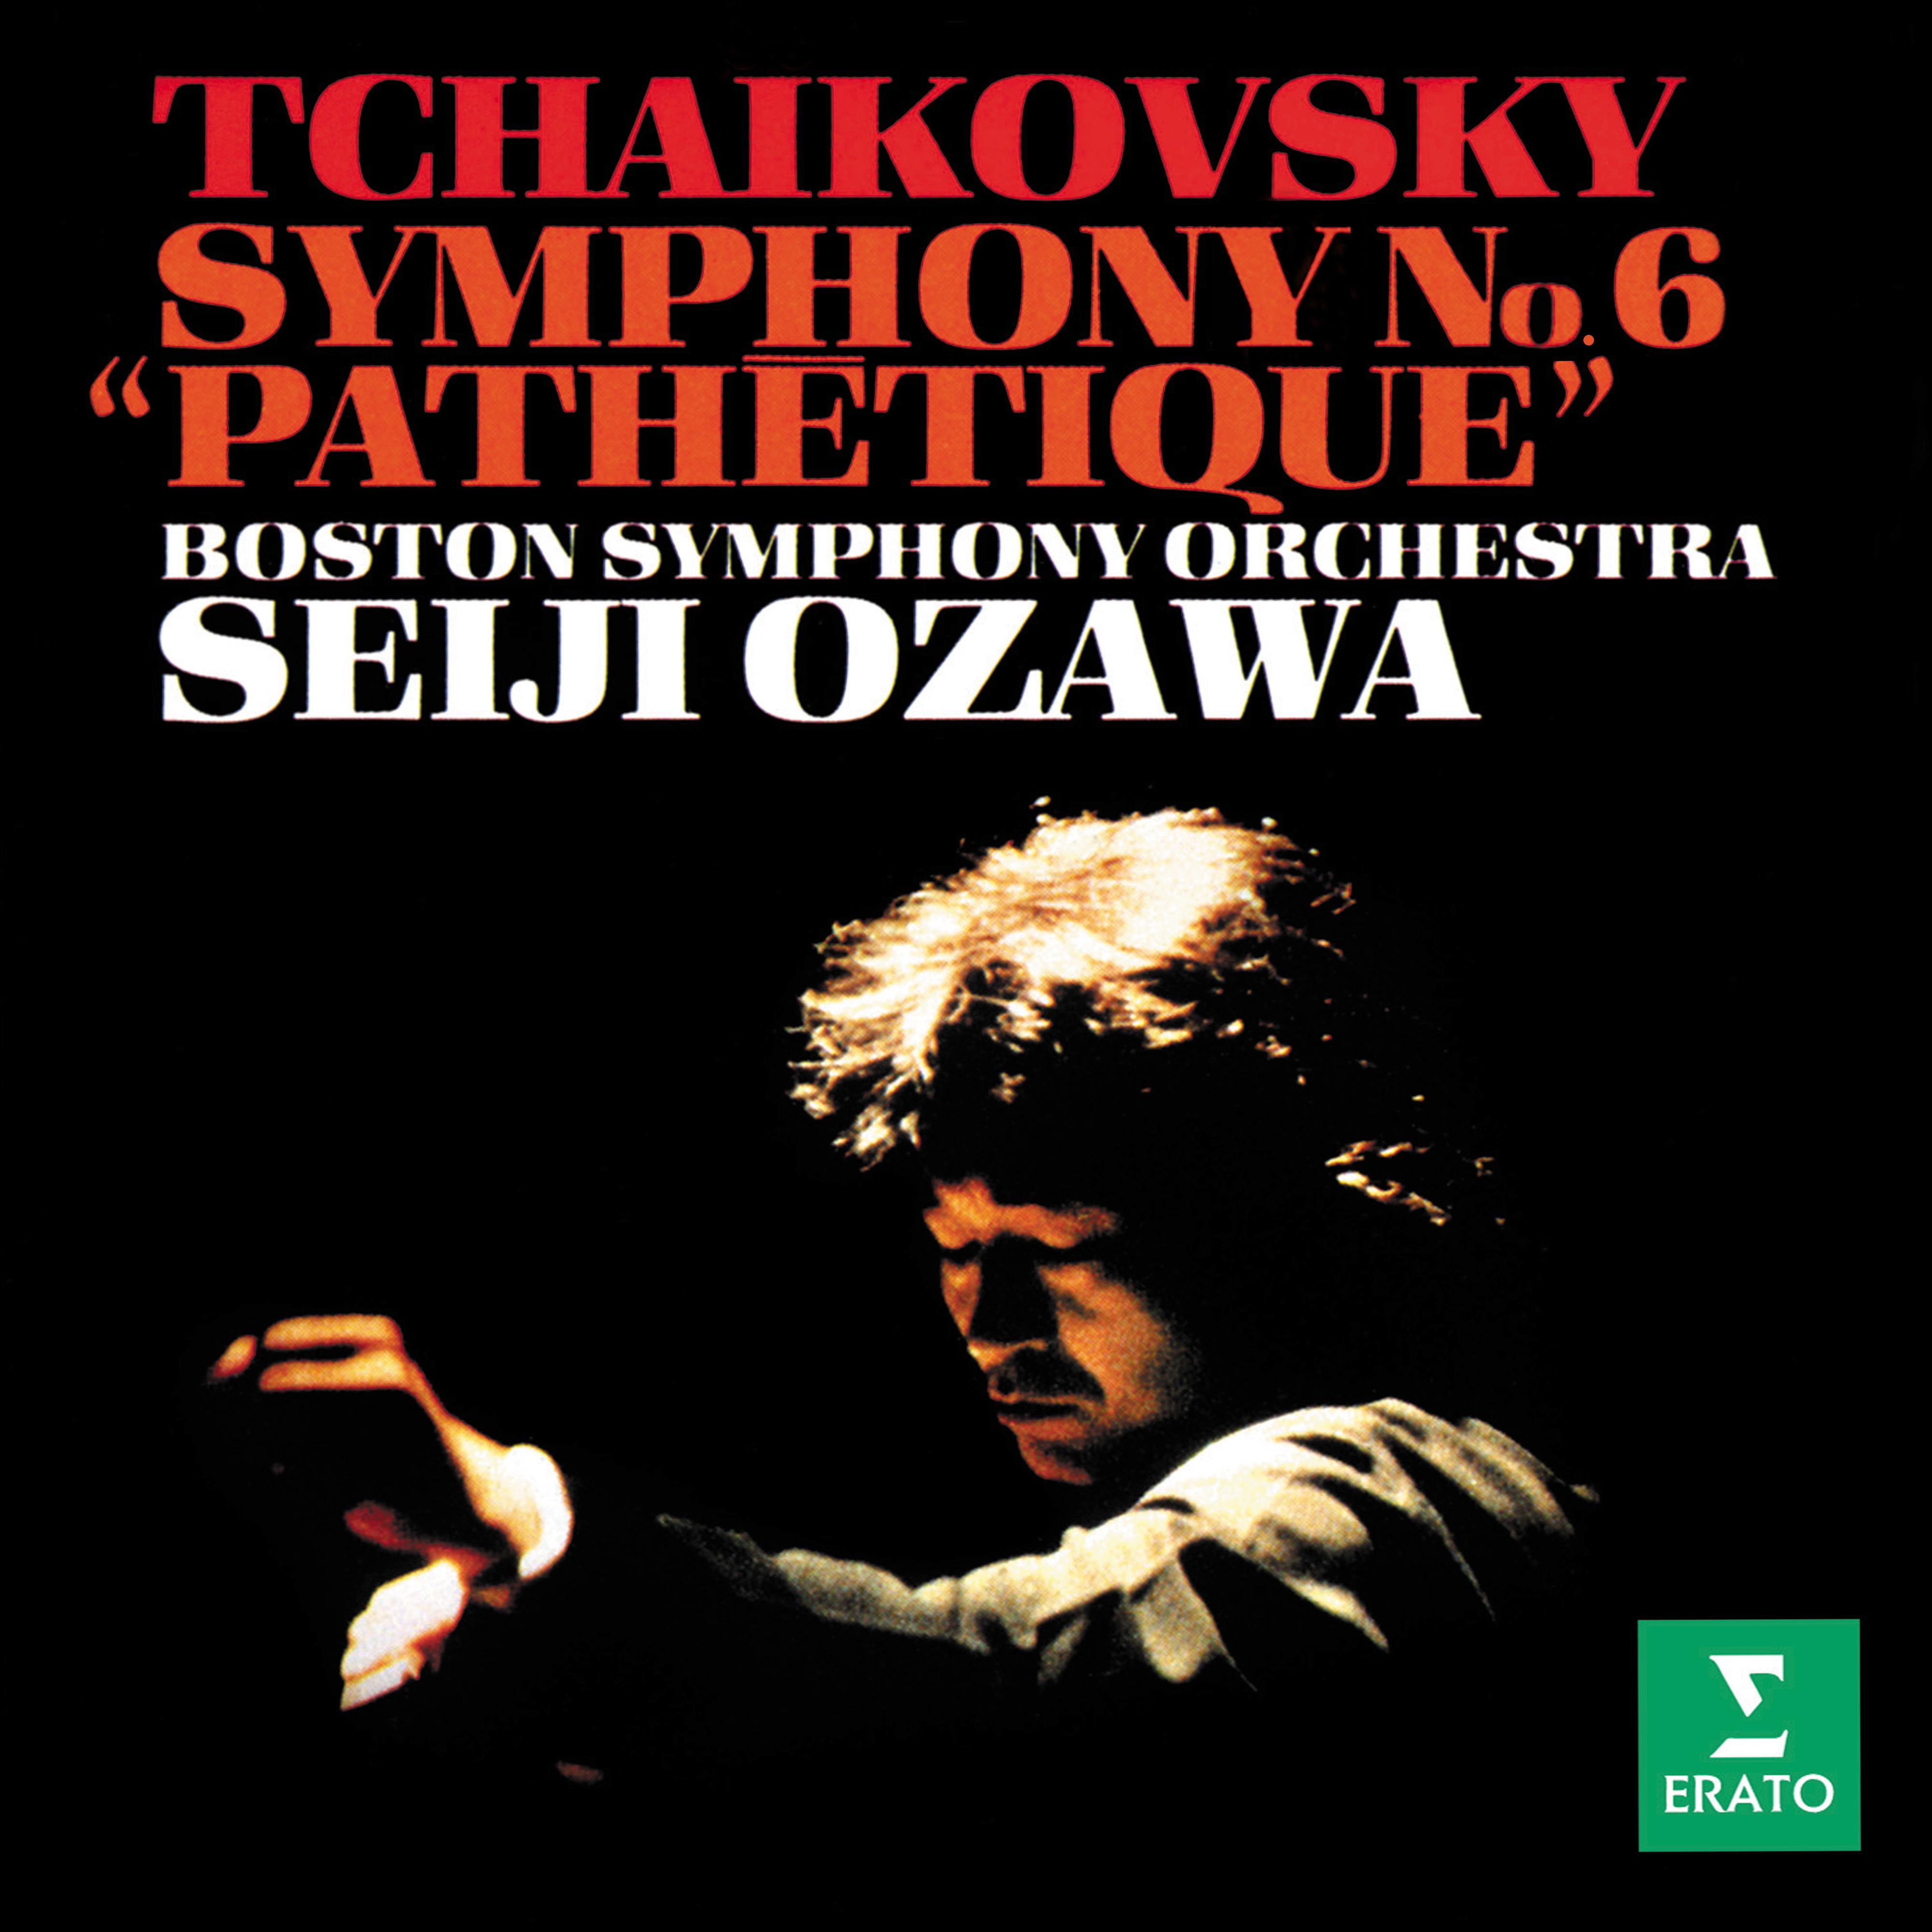 Tchaikovsky: Symphony No. 6, Op. 74 " Pathe tique"